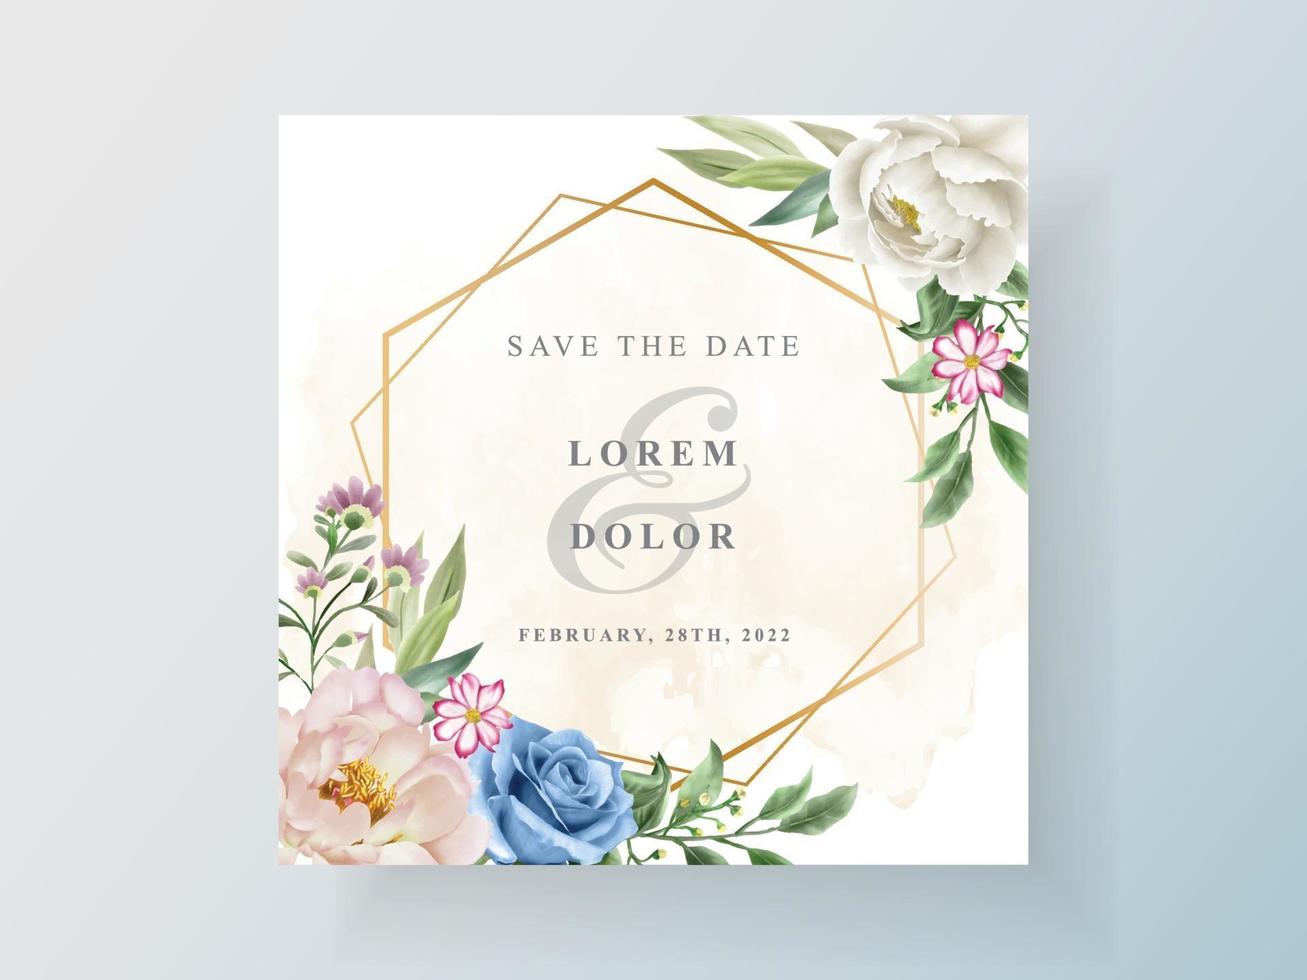 invitation de mariage avec une belle aquarelle florale vecteur